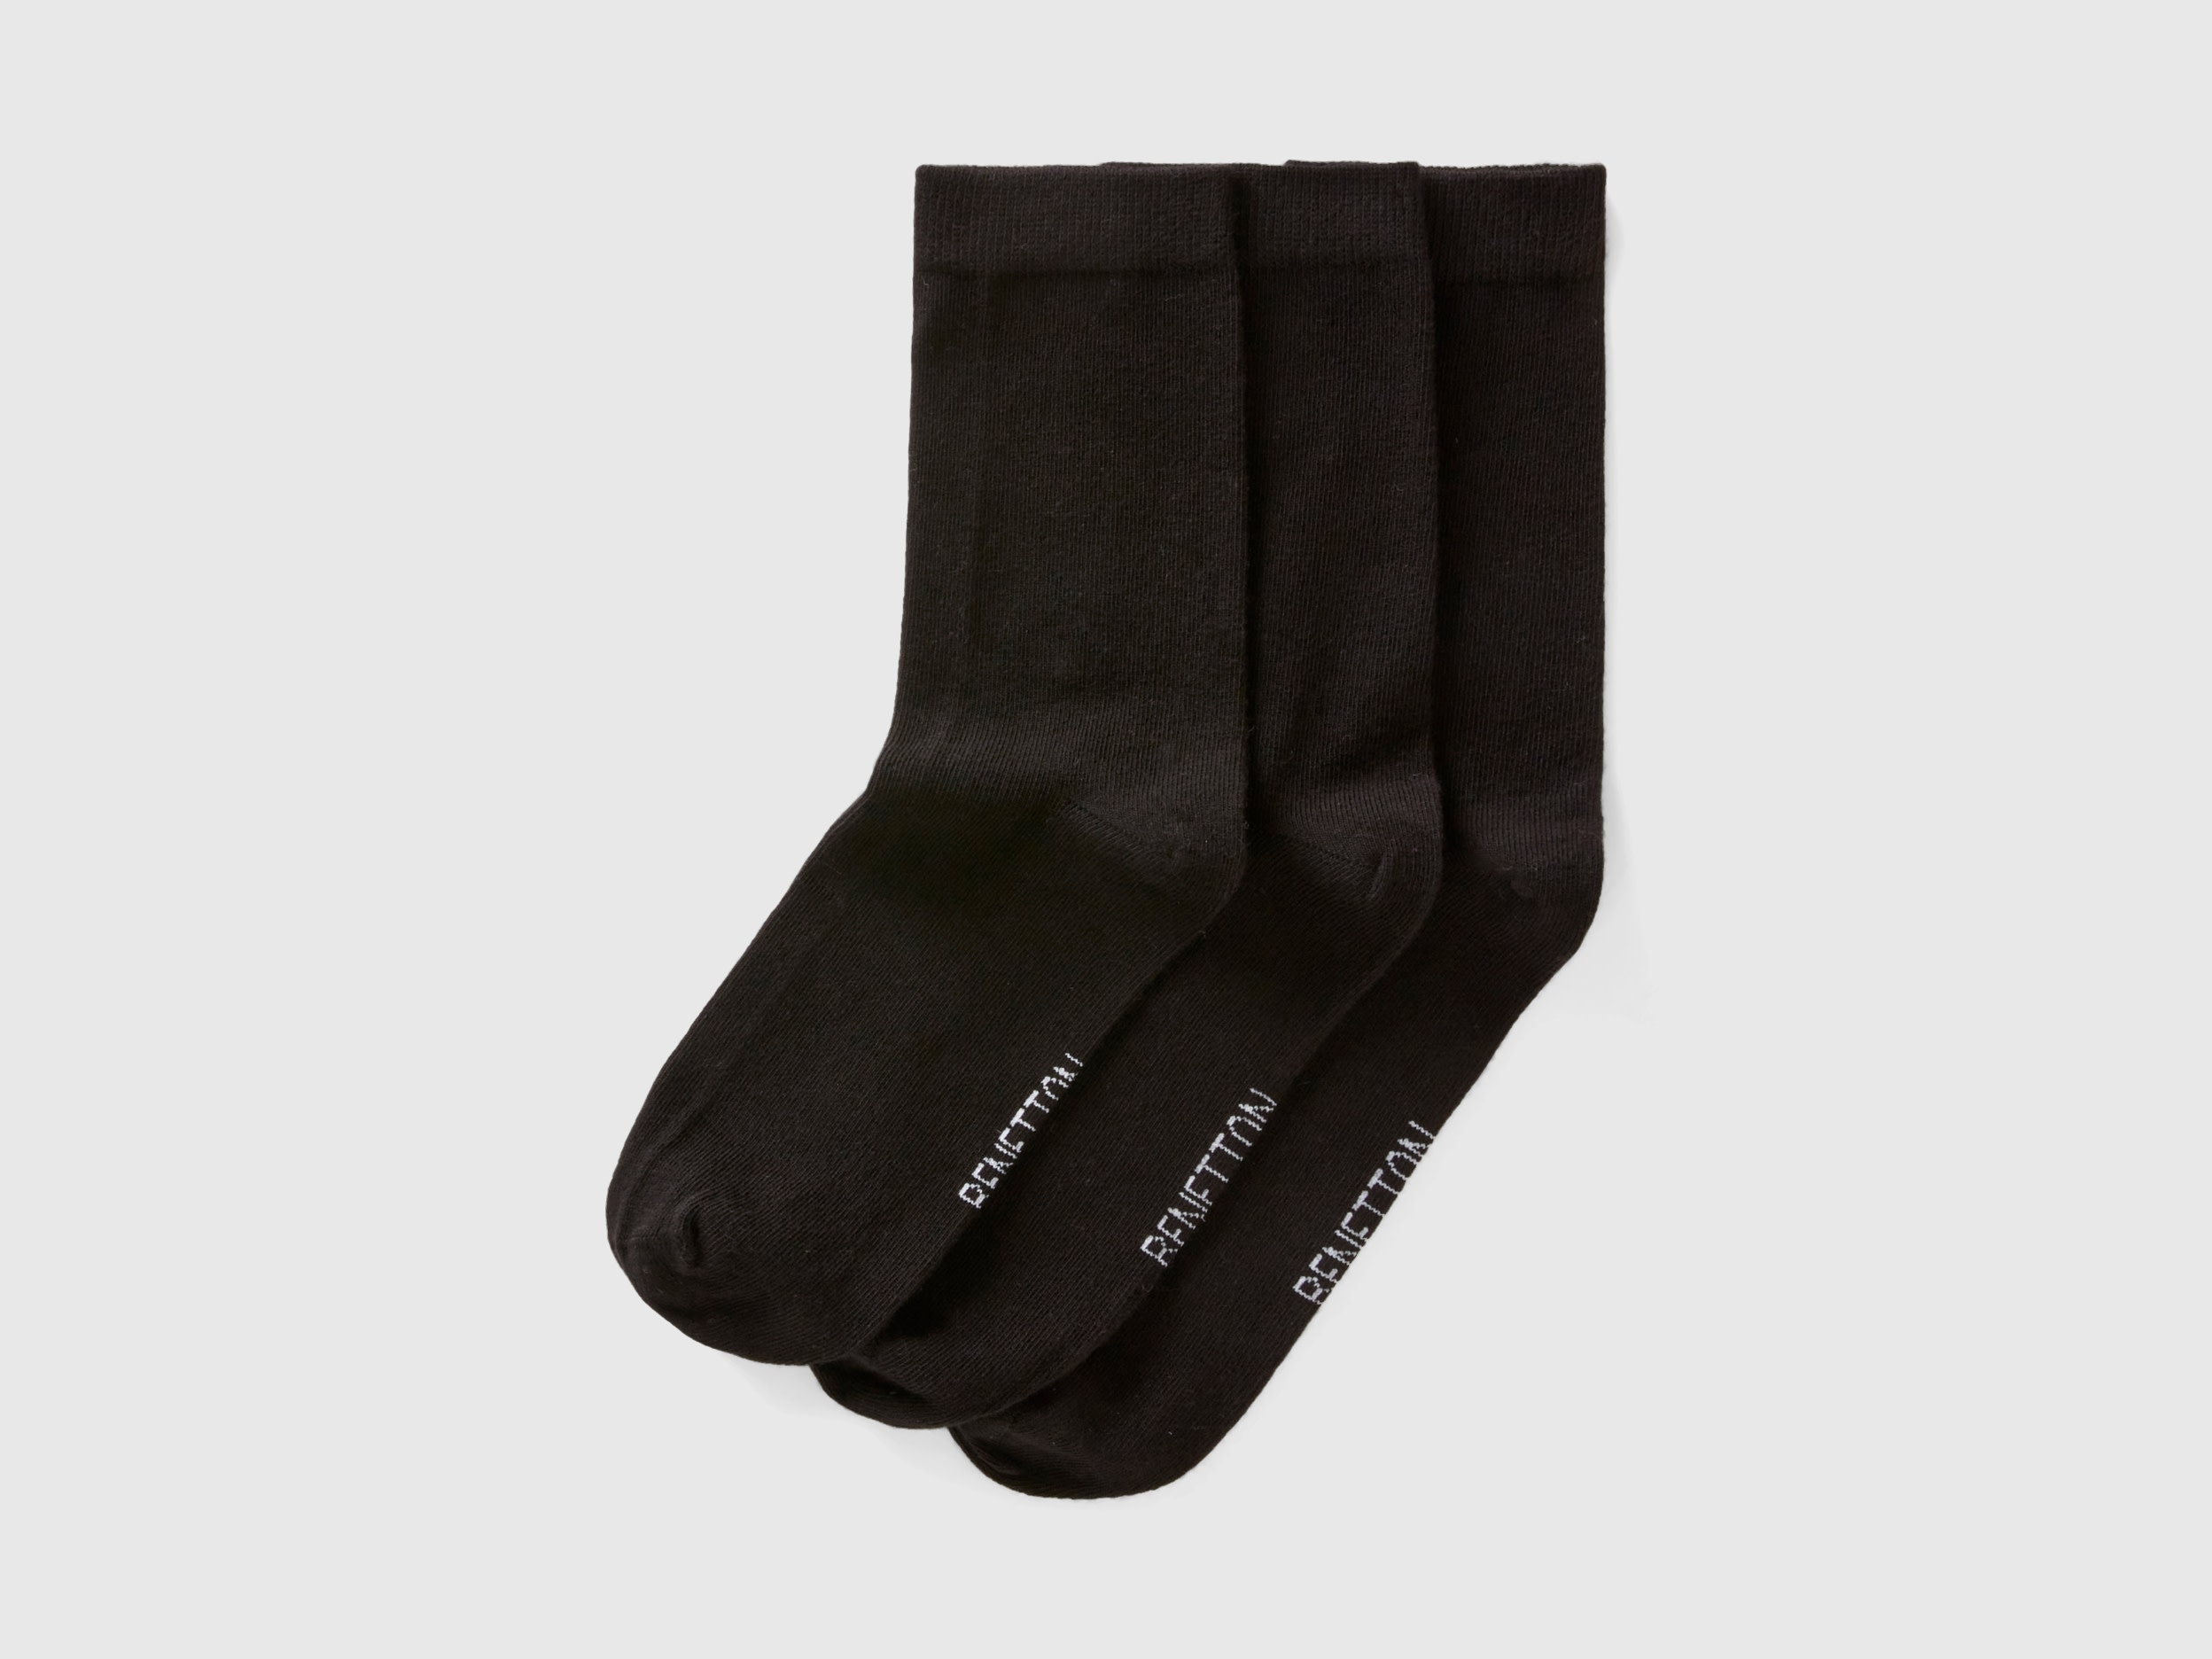 Image of Benetton, Short Sock Set, size 39-42, Black, Women